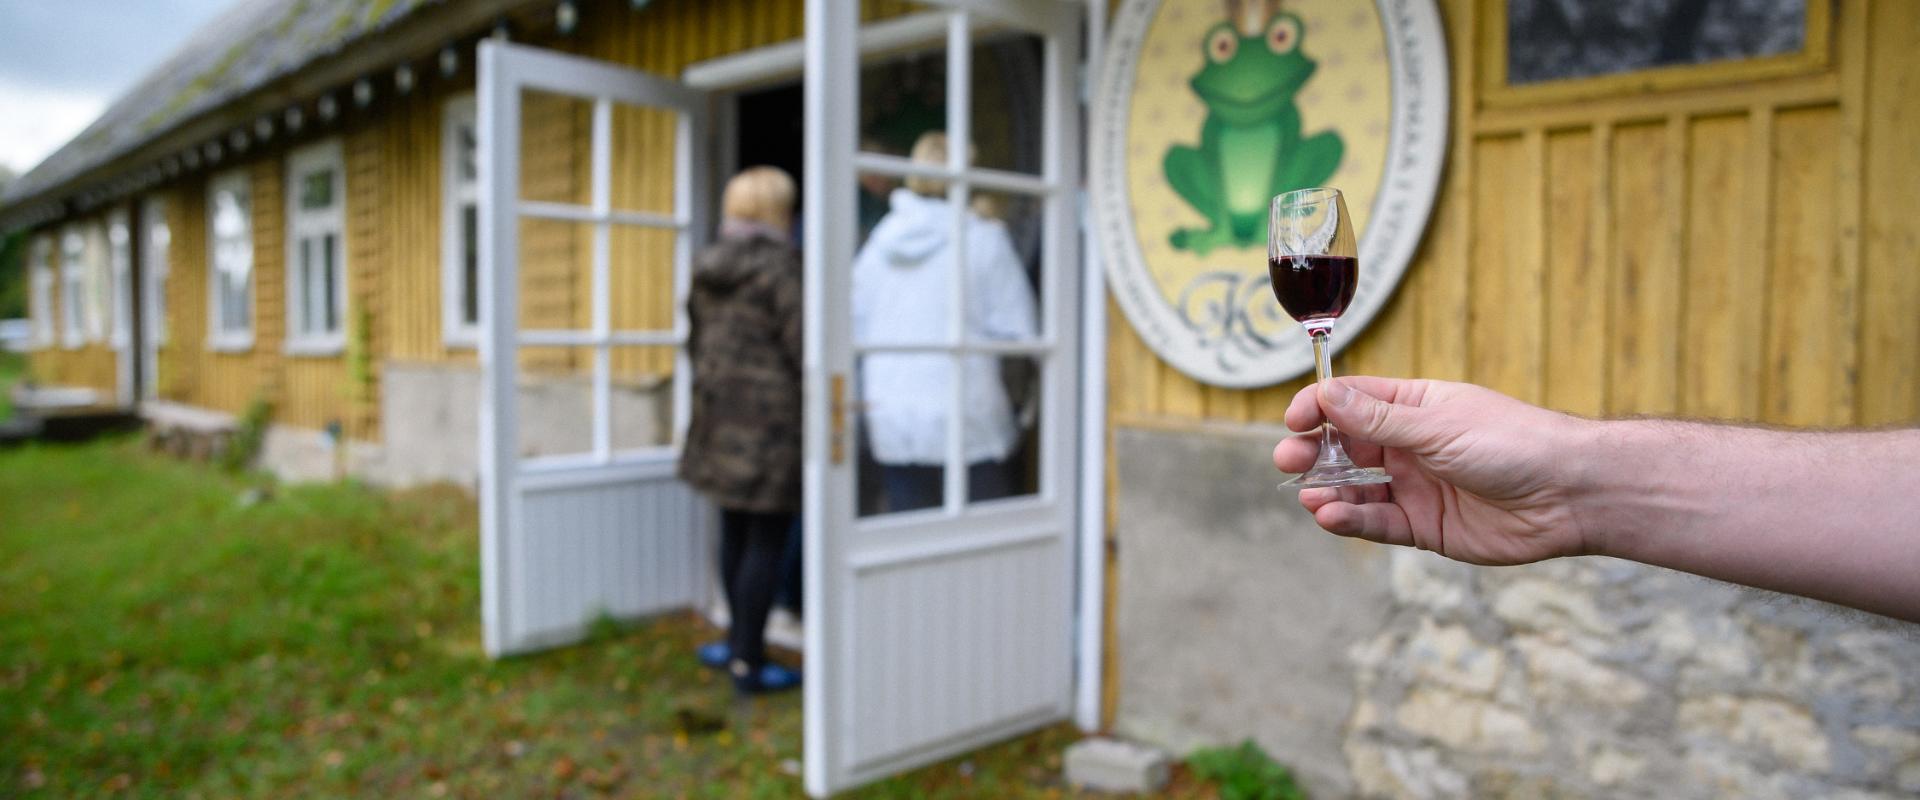 Workshop der 1. Weinkellerei auf der Insel Saaremaa